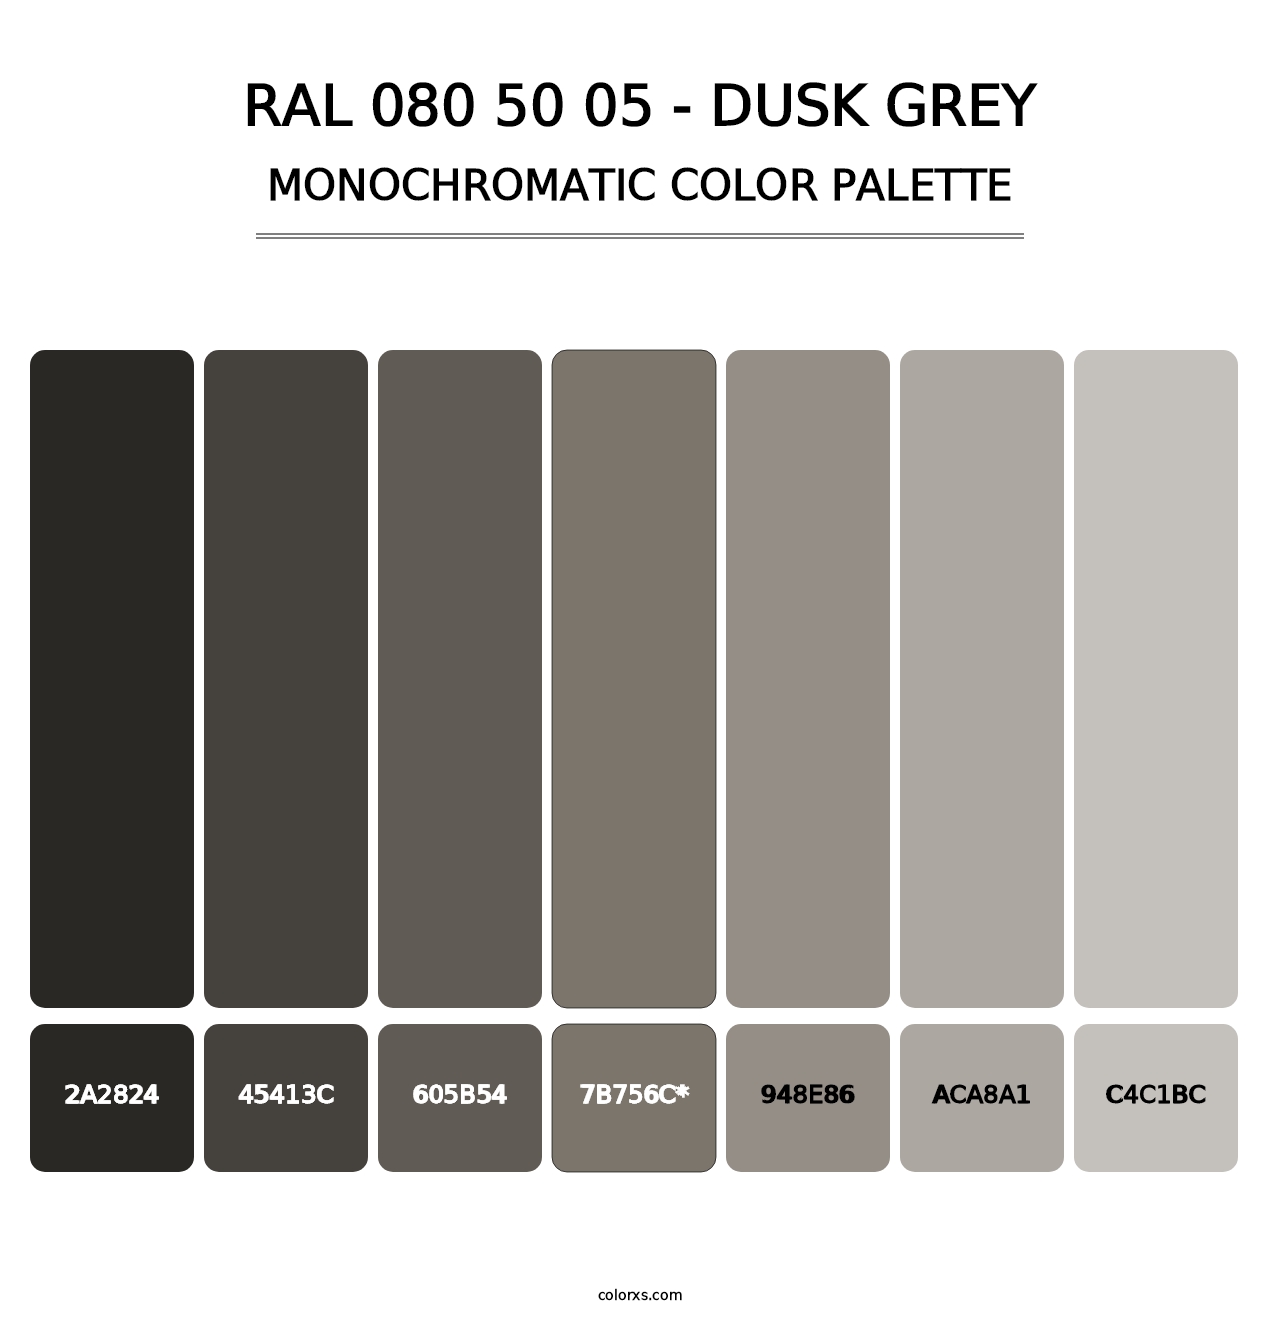 RAL 080 50 05 - Dusk Grey - Monochromatic Color Palette